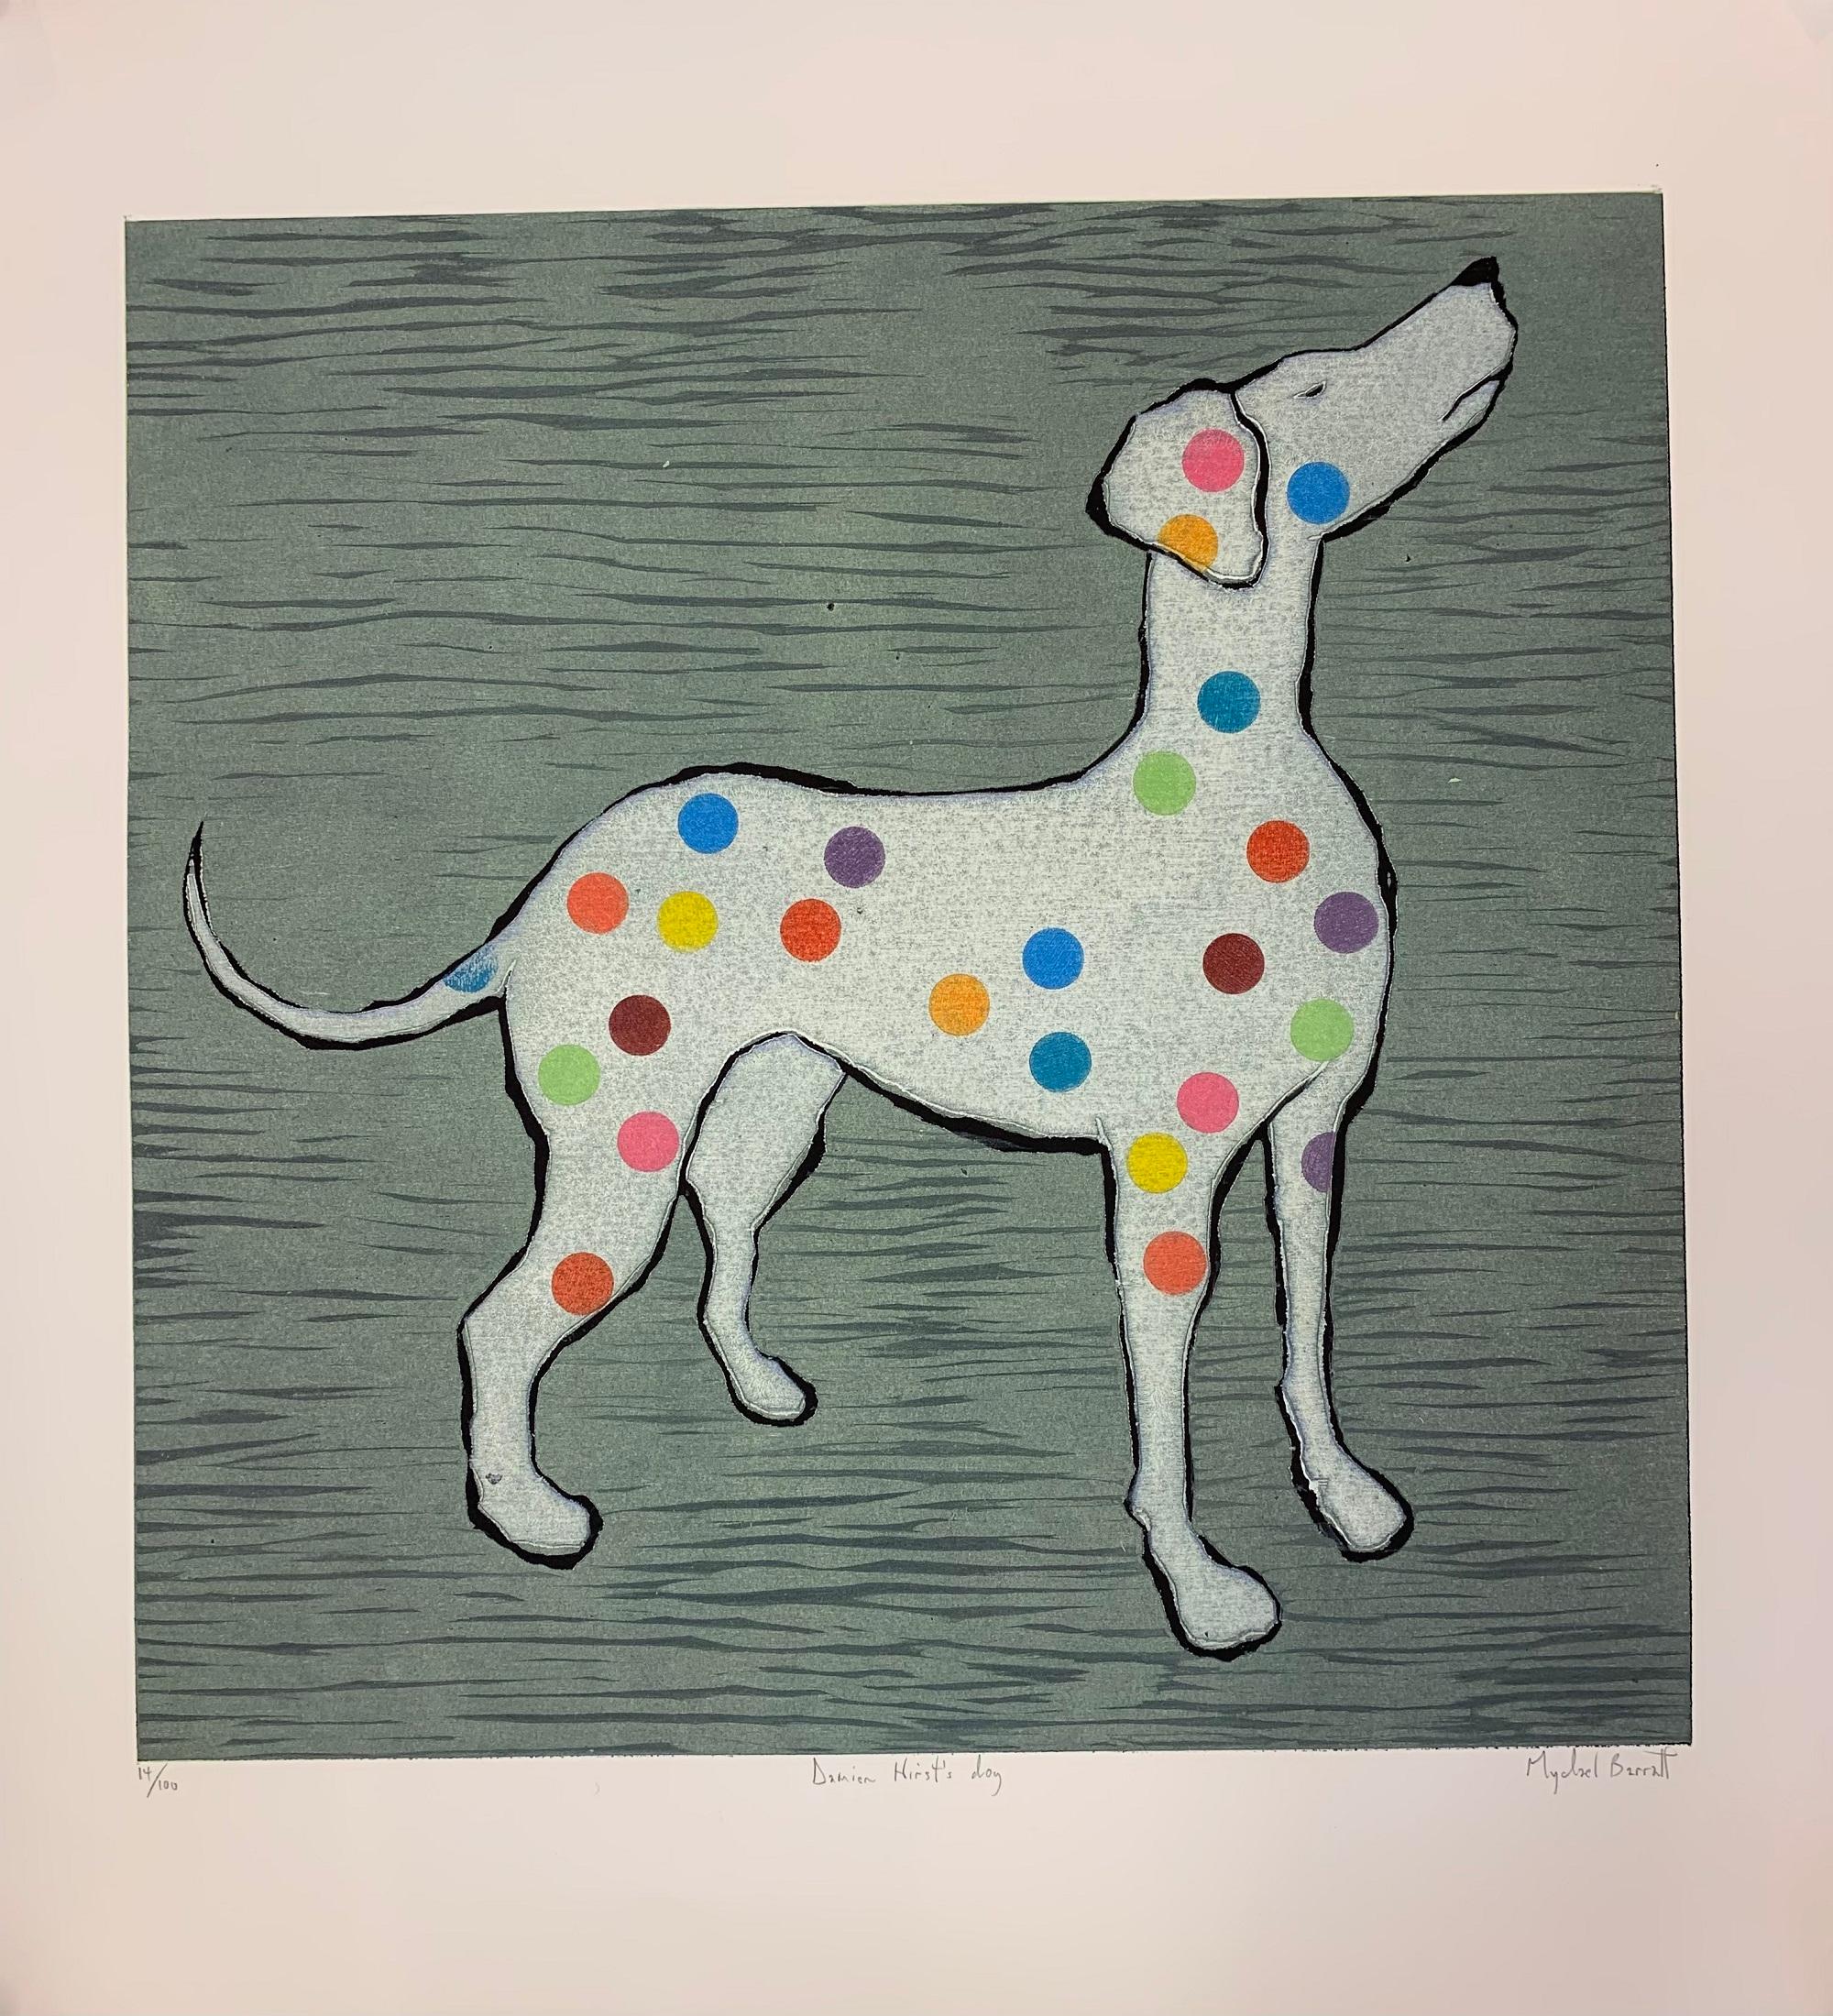 Damien Hirst's Dog, photos de chiens d'artistes célèbres, style Damien Hirst - Print de Mychael Barratt